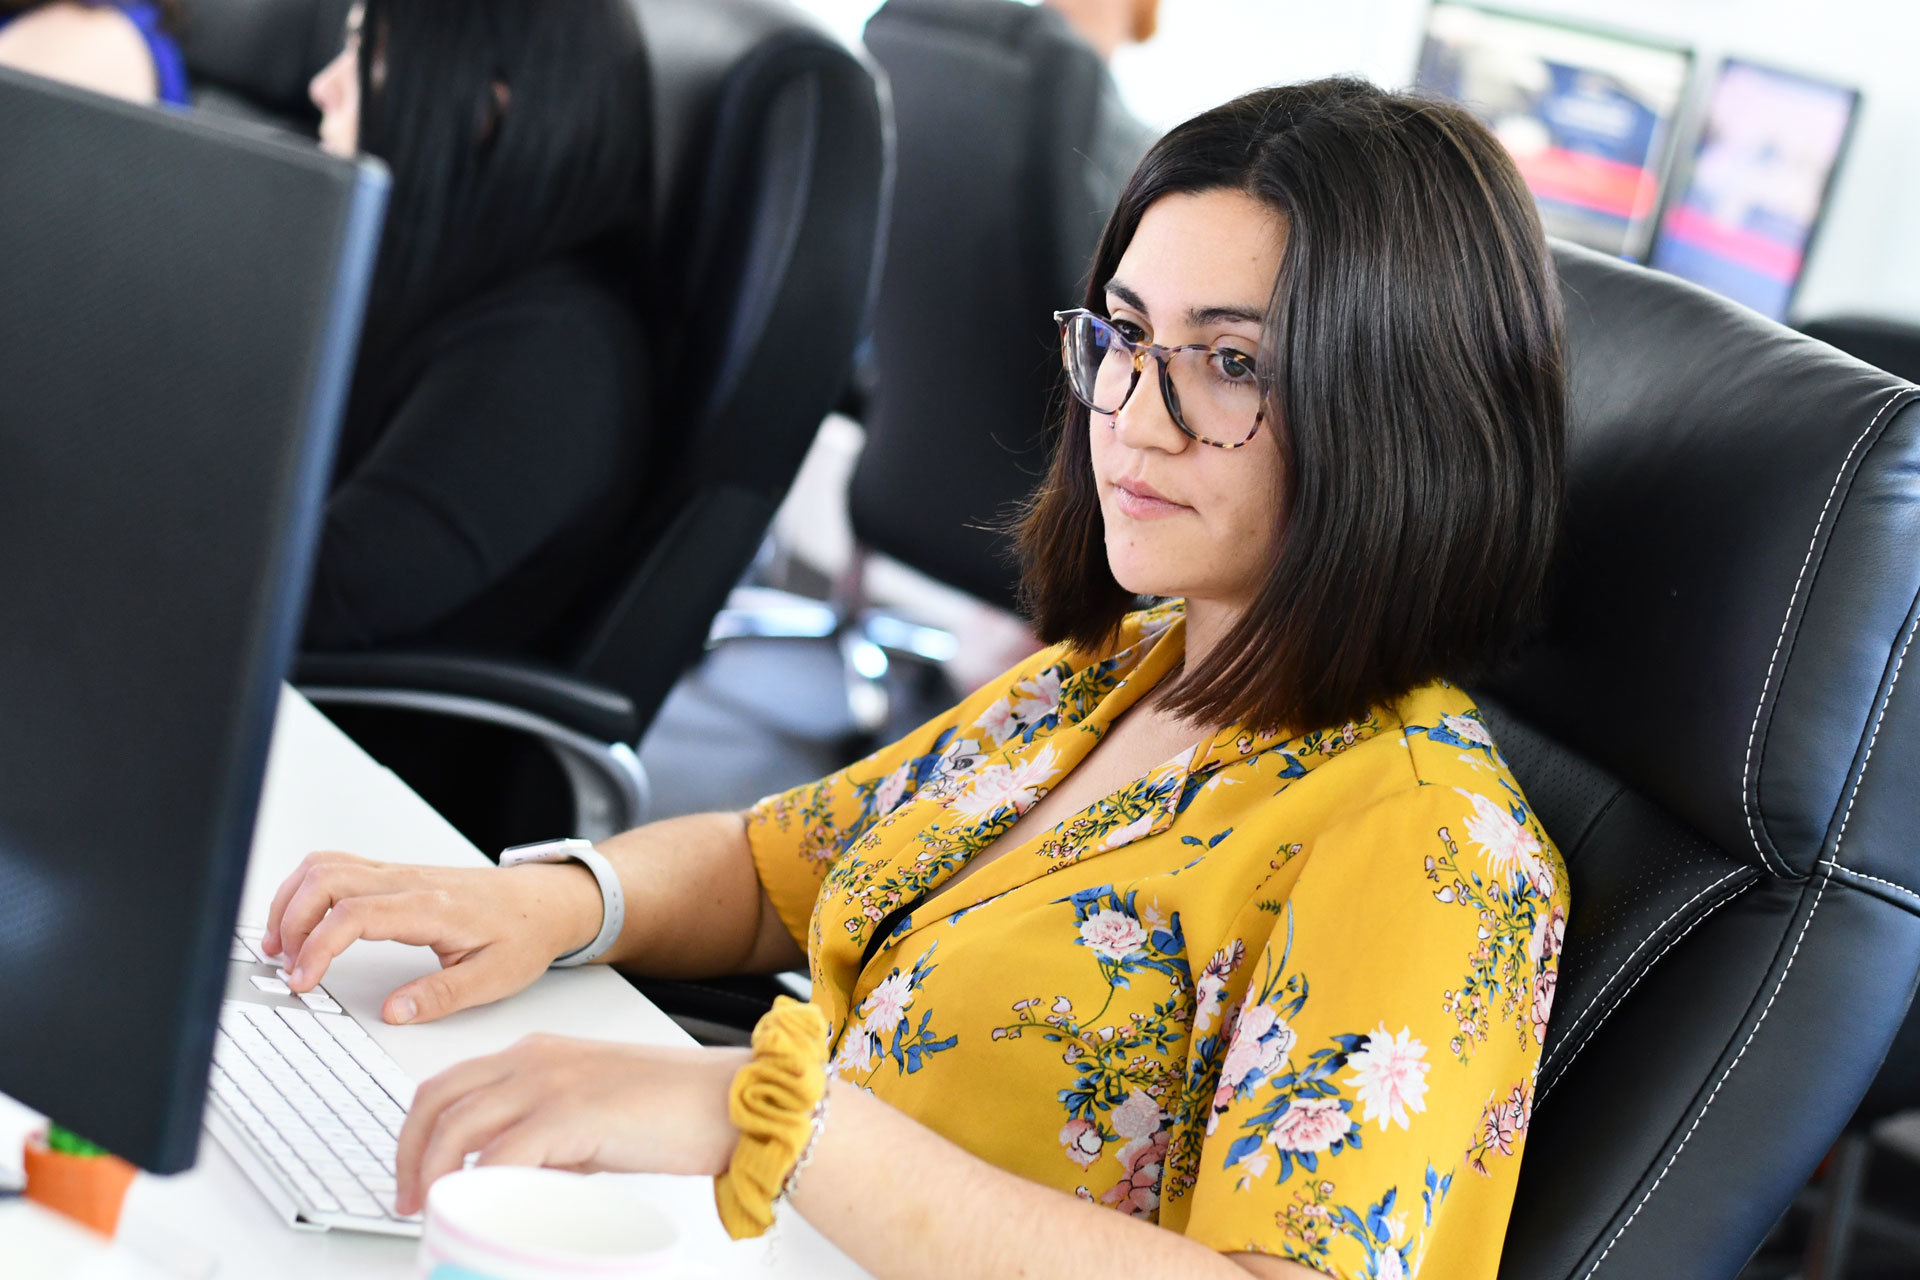 A website designer sat at her desk